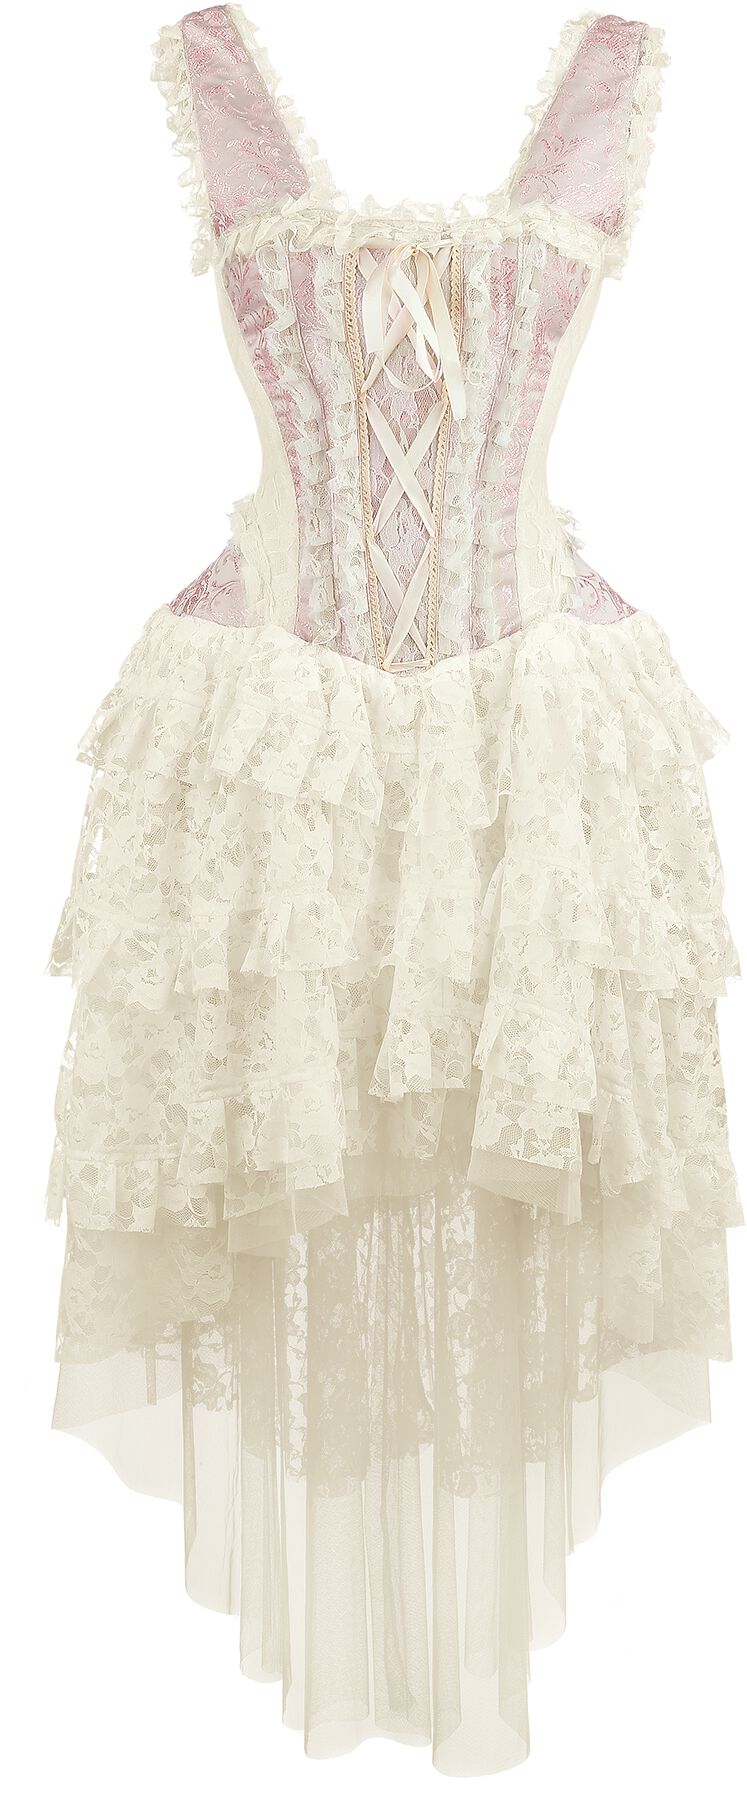 Burleska - Gothic Kleid lang - Ophelie Dress - S bis 3XL - für Damen - Größe S - rosa